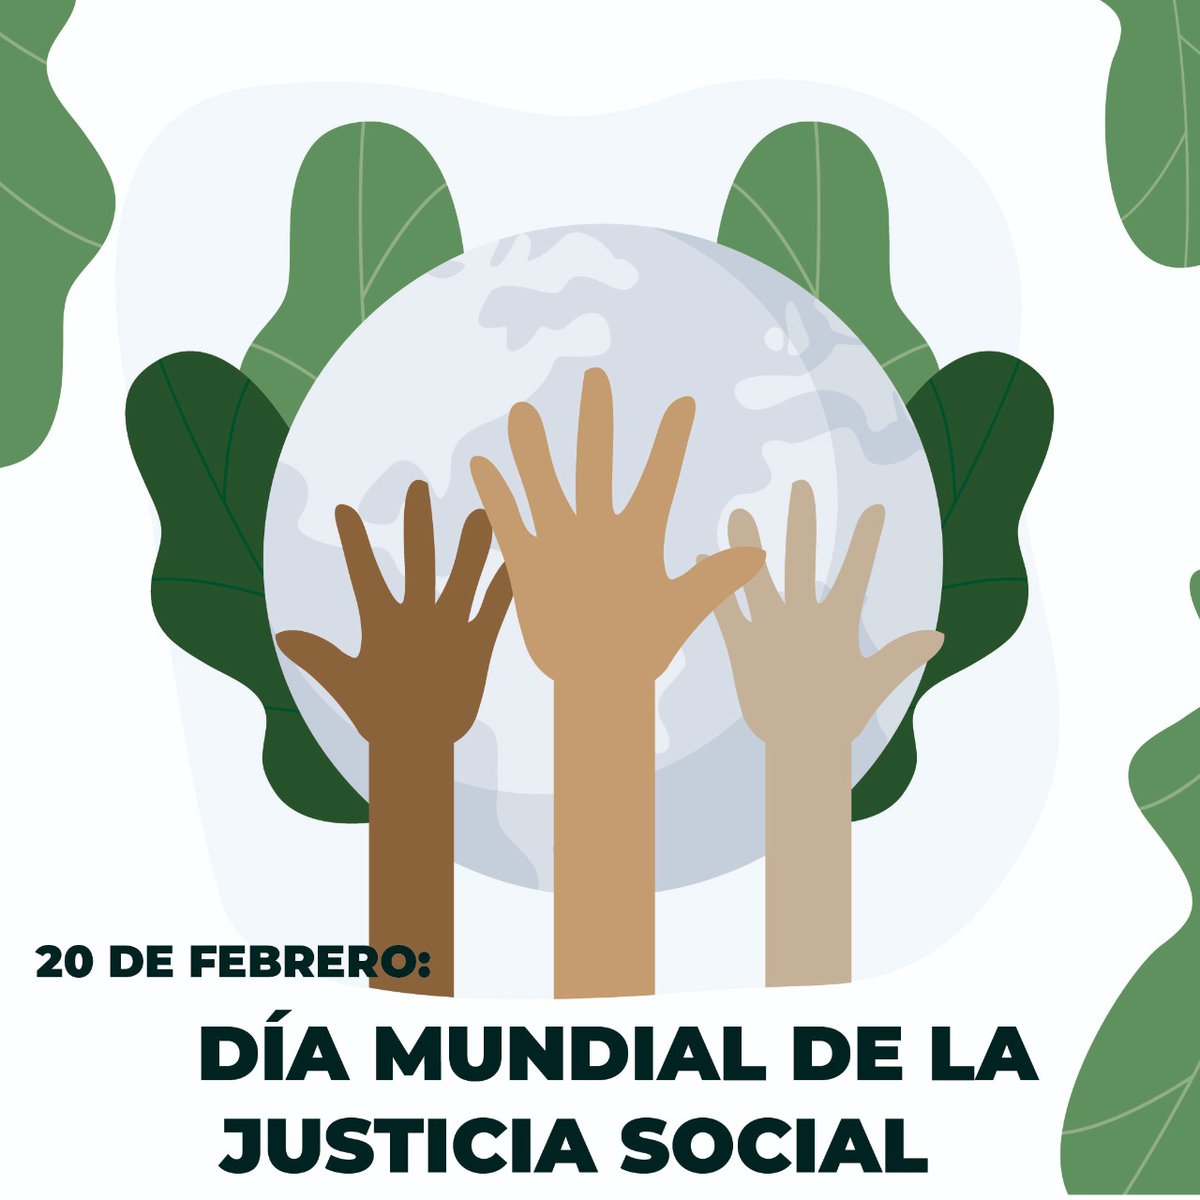 Todos los 20 de febrero la humanidad conmemora el Día Mundial de la Justicia Social, que busca promover la eliminación de las barreras que enfrentan las personas por motivos de género, edad, raza, etnia, religión, cultura o discapacidad.